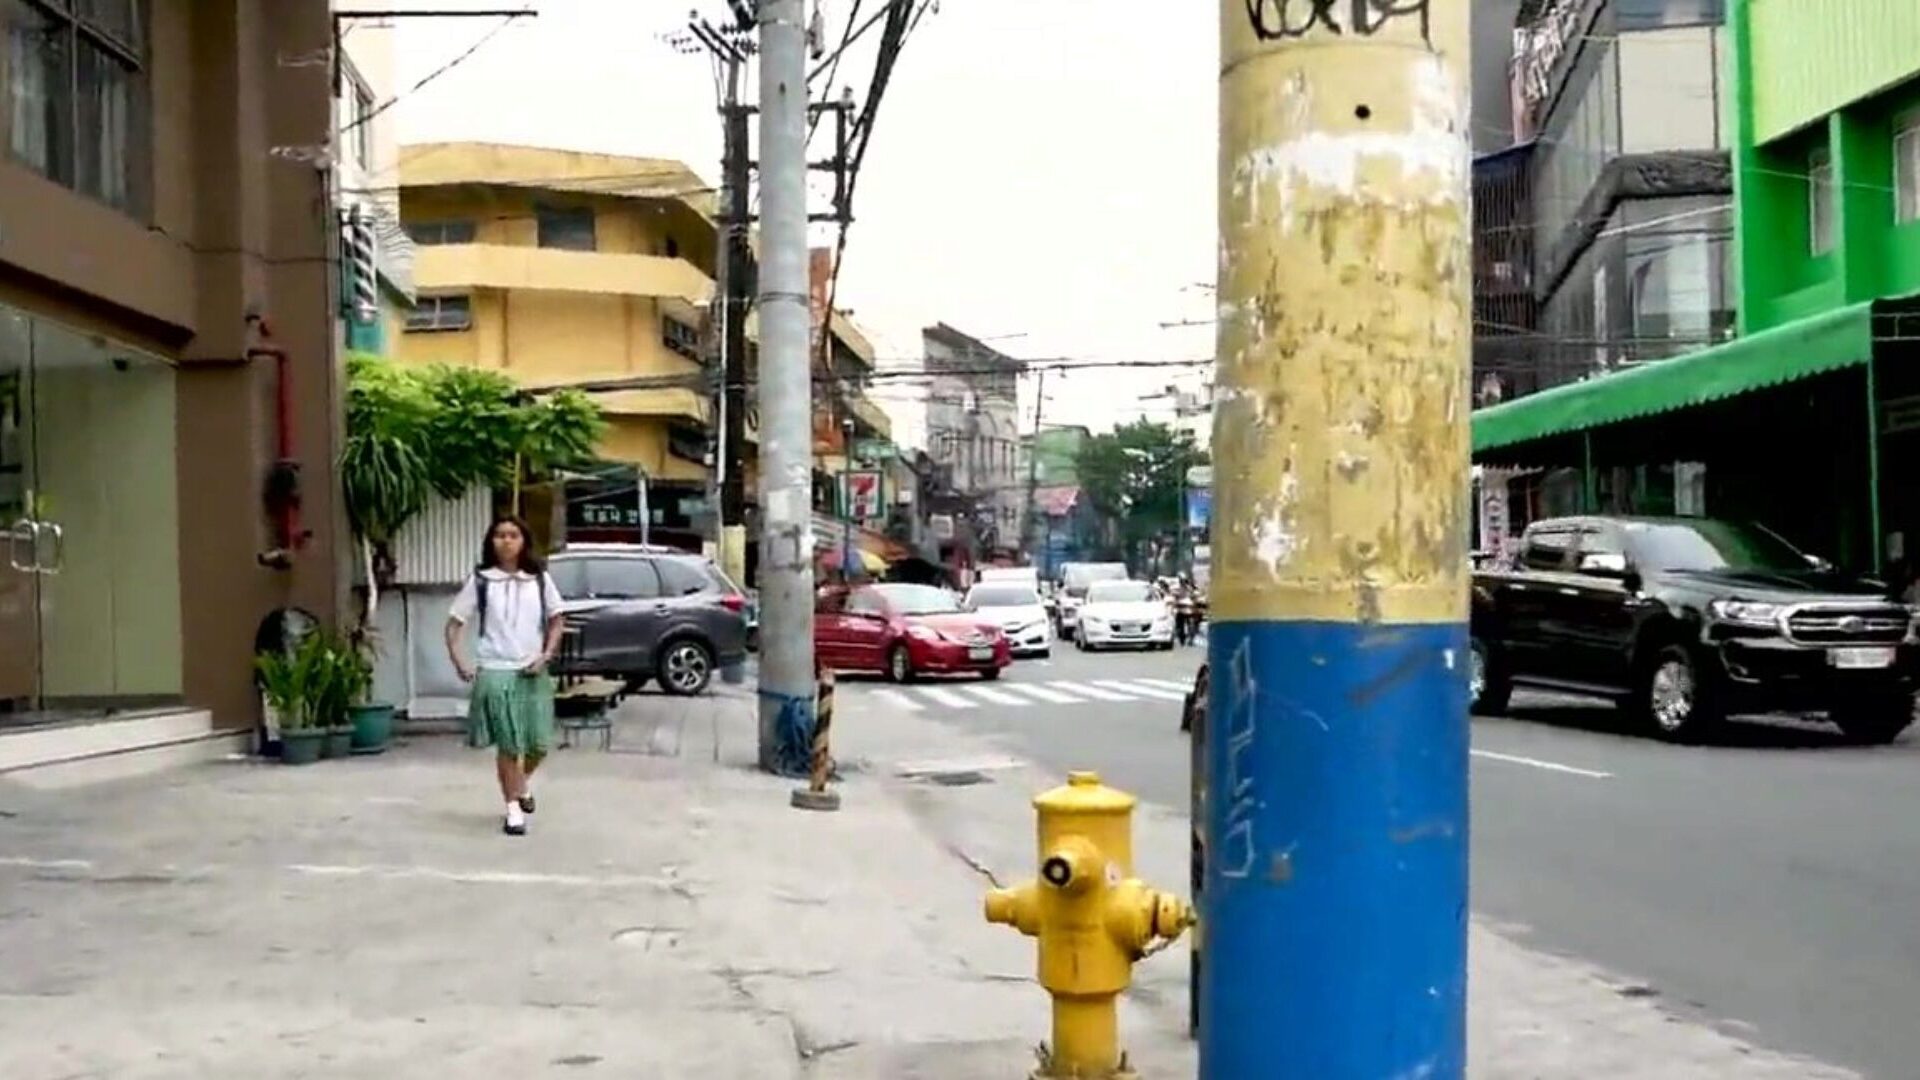 stude branco impregna adolescente filipina, pornografia hd 59: xhamster assistir stude branco impregna cena de filme adolescente filipina no xhamster, o melhor site de tubo de sexo em HD com toneladas de adolescentes grátis para adolescentes grátis e filmes pornôs de creampie